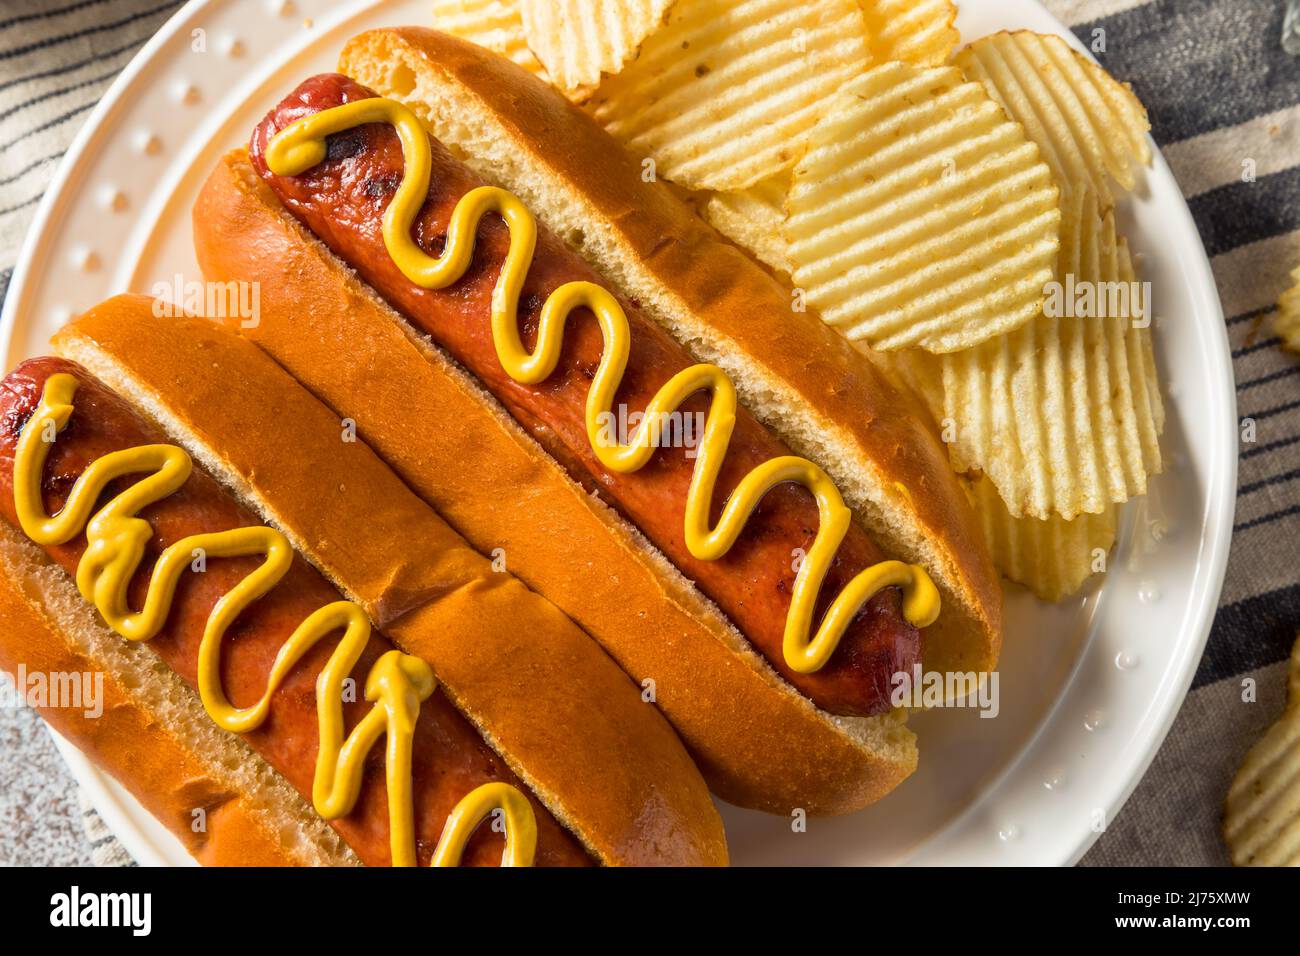 Perro caliente americano casero con patatas fritas y mostaza Foto de stock